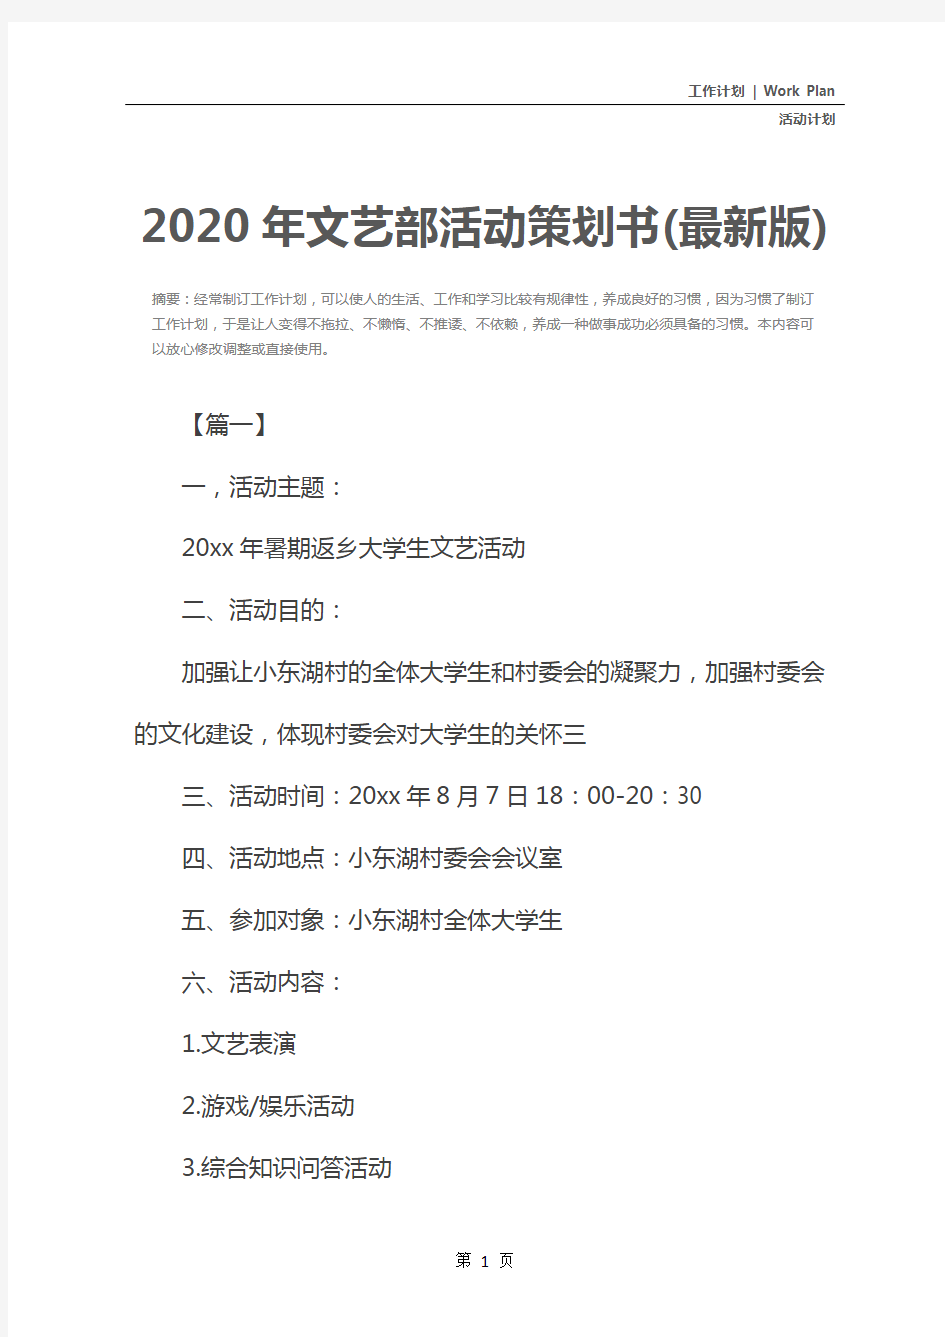 2020年文艺部活动策划书(最新版)